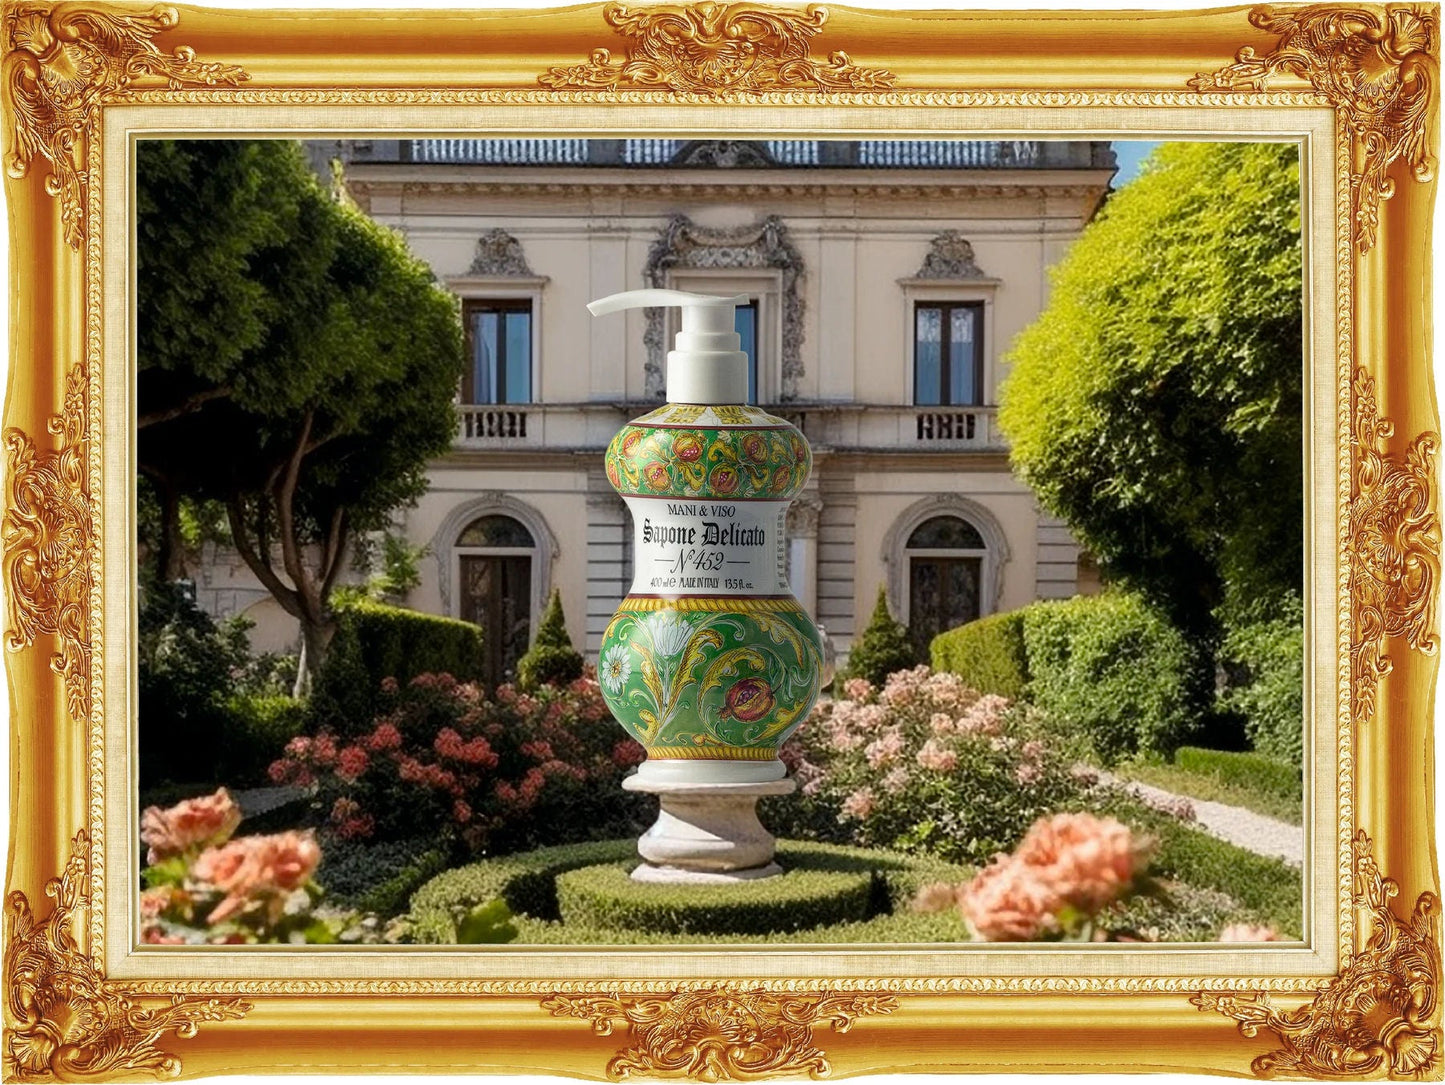 Delicate Hand & Face Soap 400 ml - N.° 452 Granatum Gli Albarelli - |VESIMI Design| Luxury Bathrooms and Home Decor